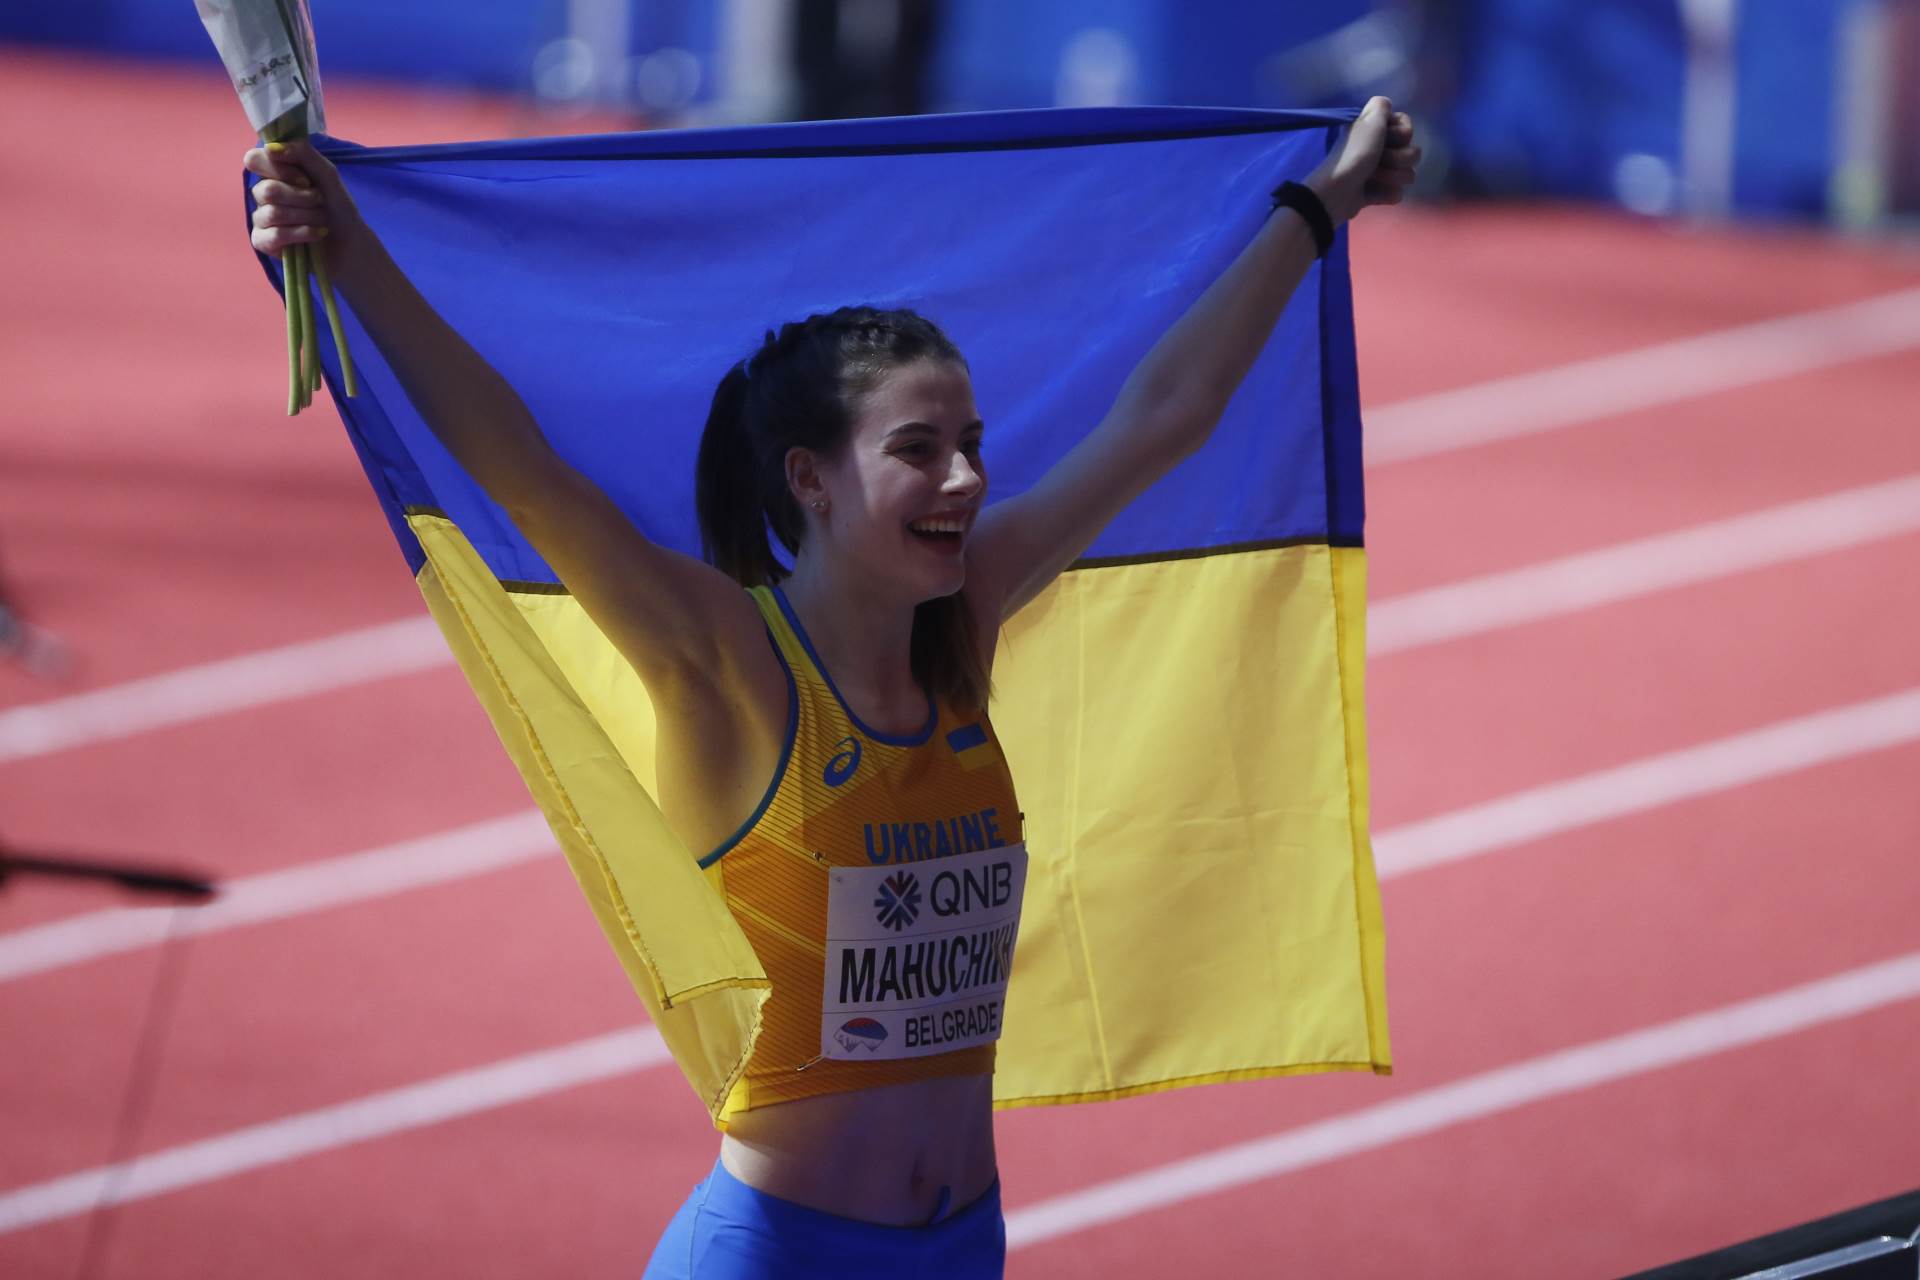  ukrajinska atletičarka osvojila zlatnu medalju u beogradu 